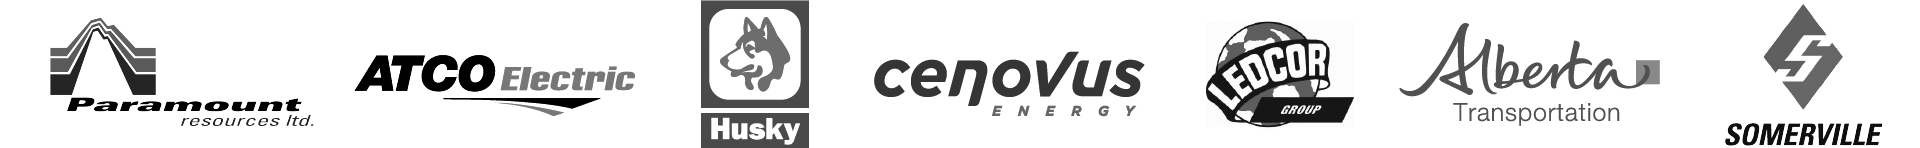 TerraPro-Matting-Services-Client-Logos